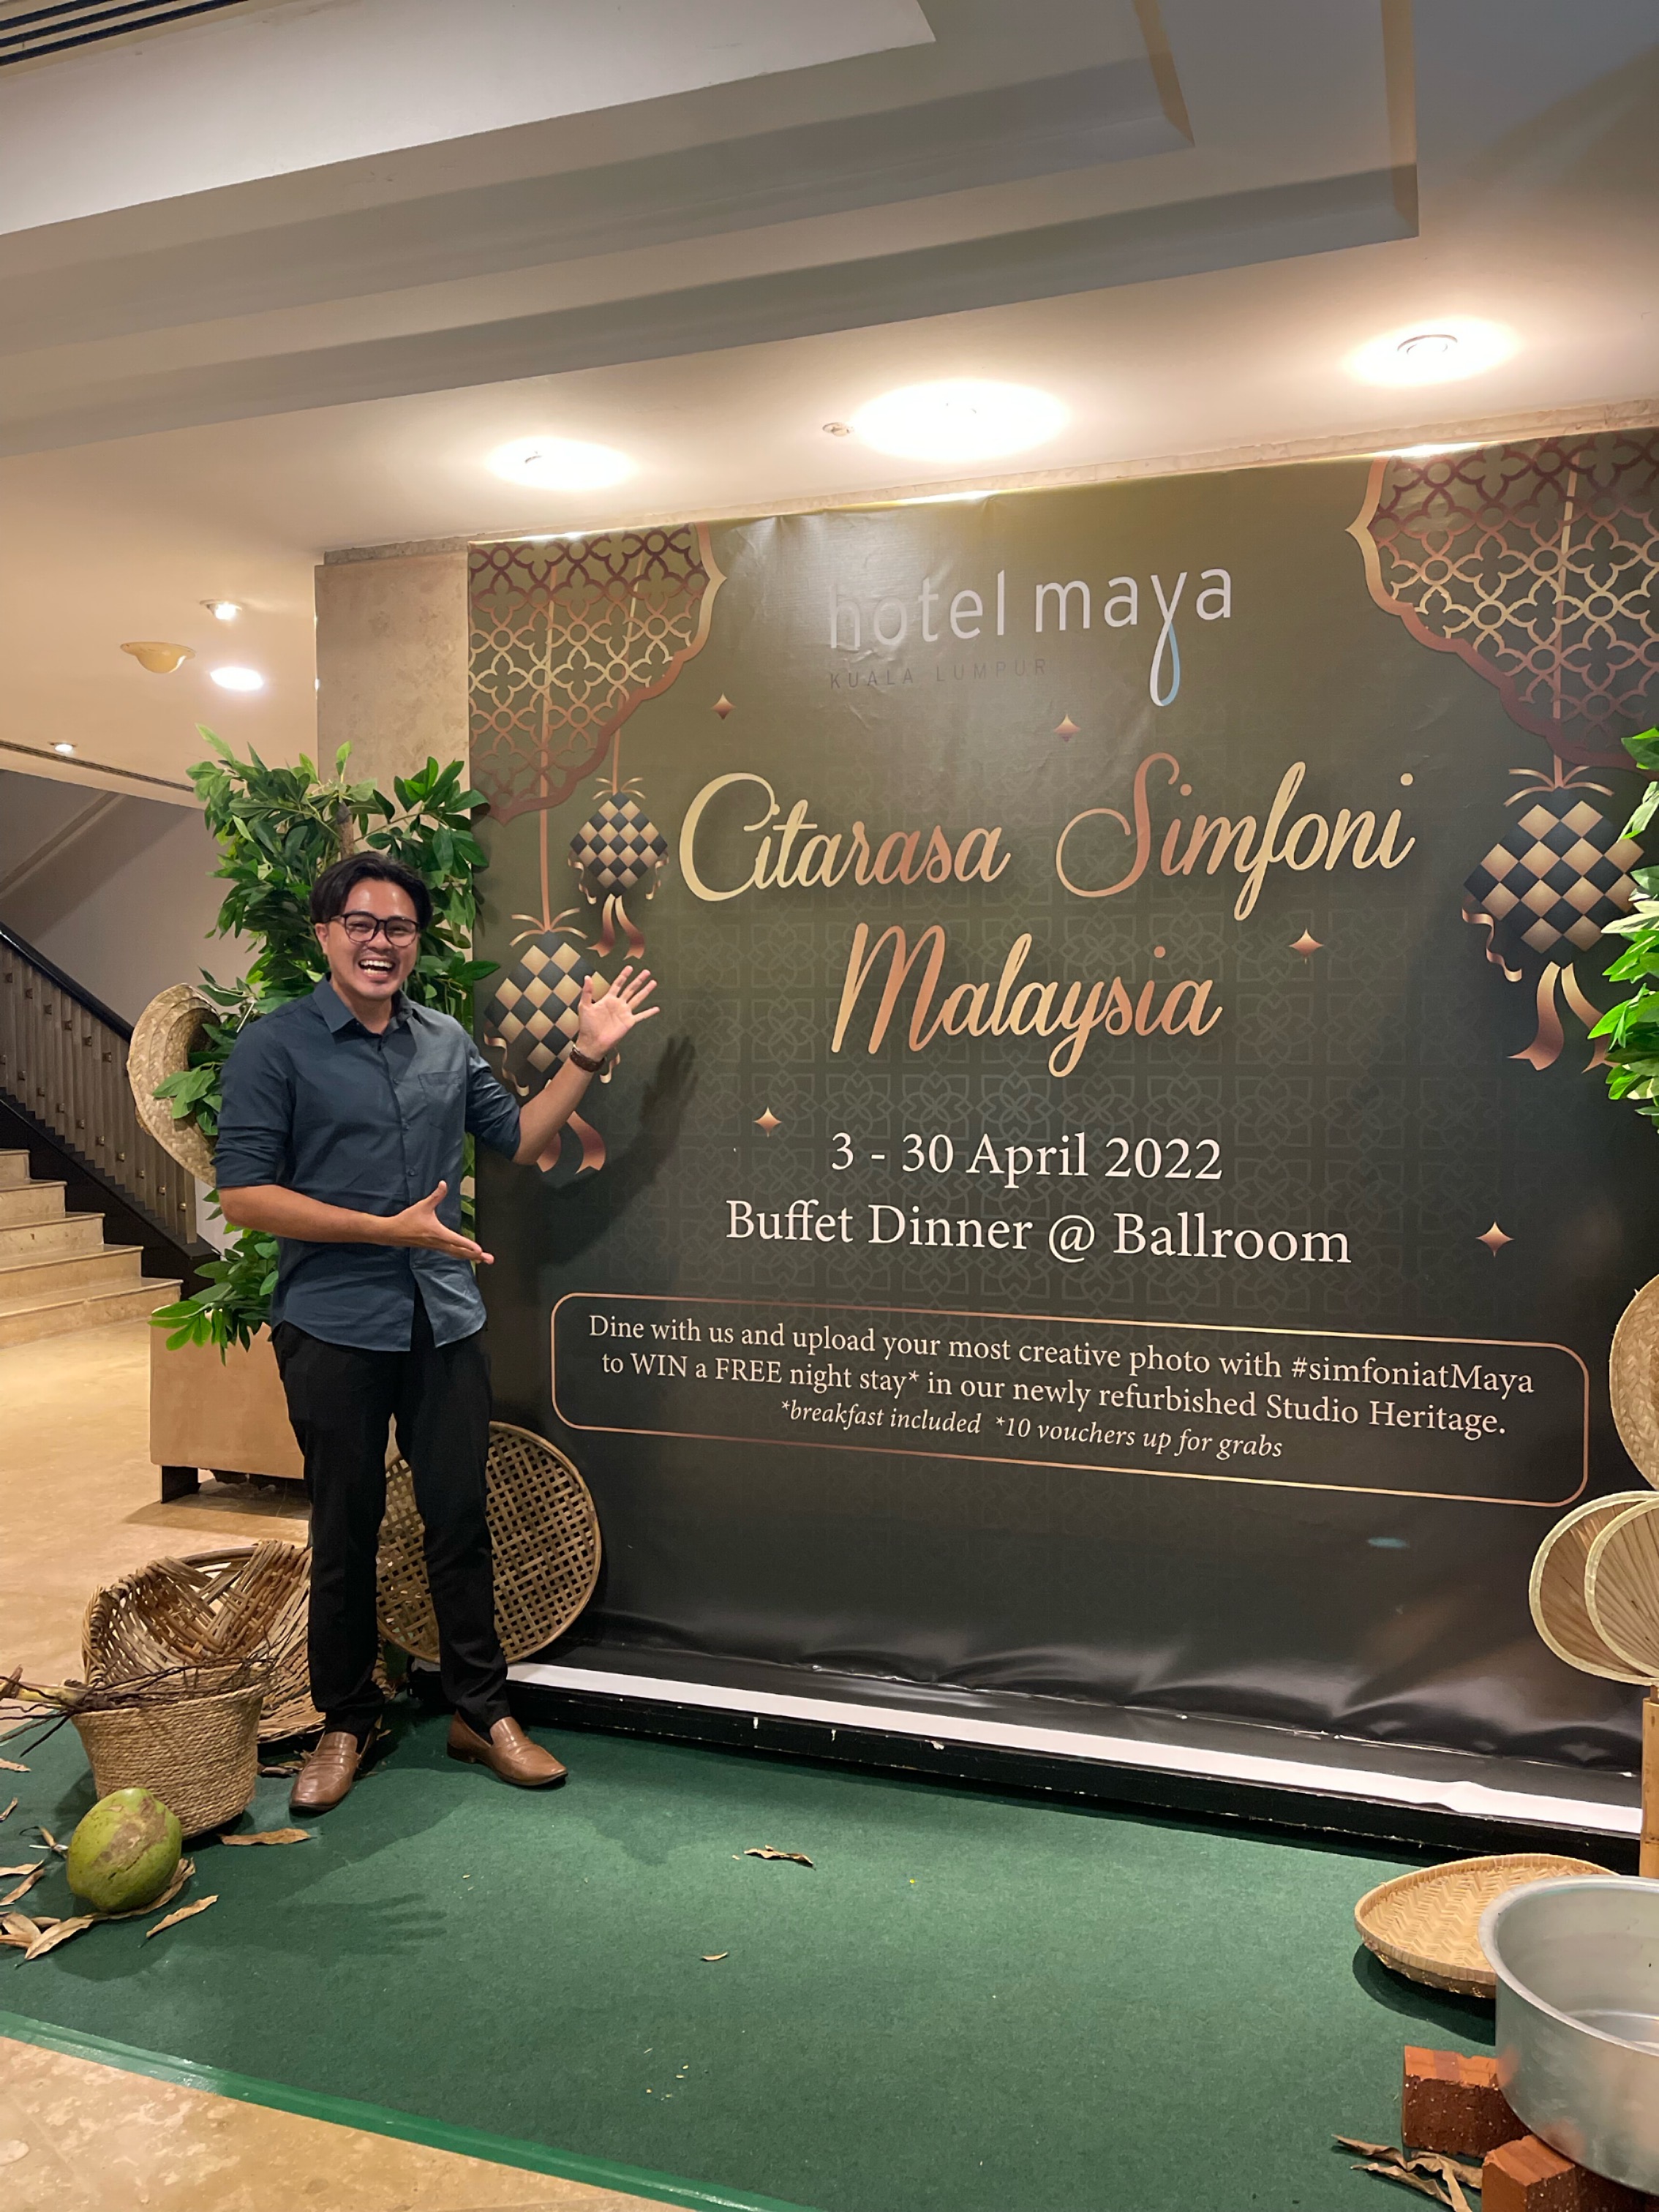 HOTEL MAYA KUALA LUMPUR SEMARAK CITARASA SIMFONI MALAYSIA MENERUSI BUFET SEPANJANG RAMADAN 2022